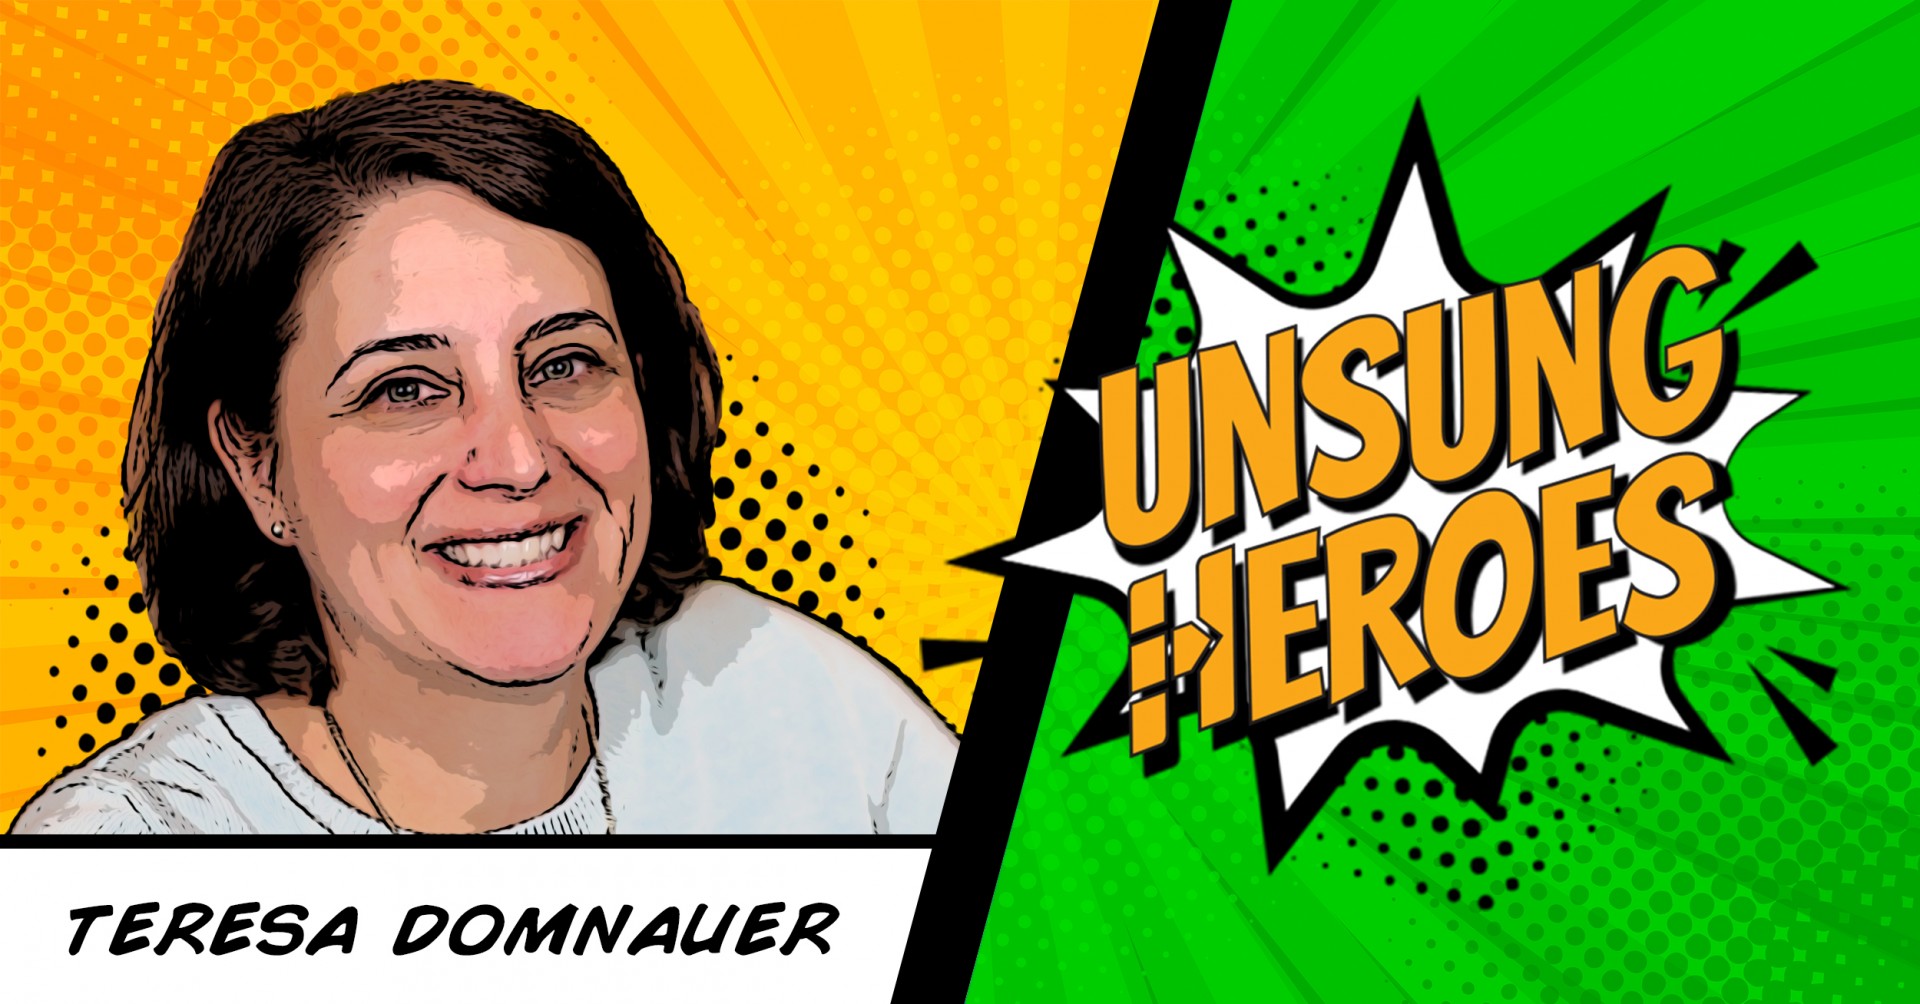 Unsung Heroes: Teresa Domnauer